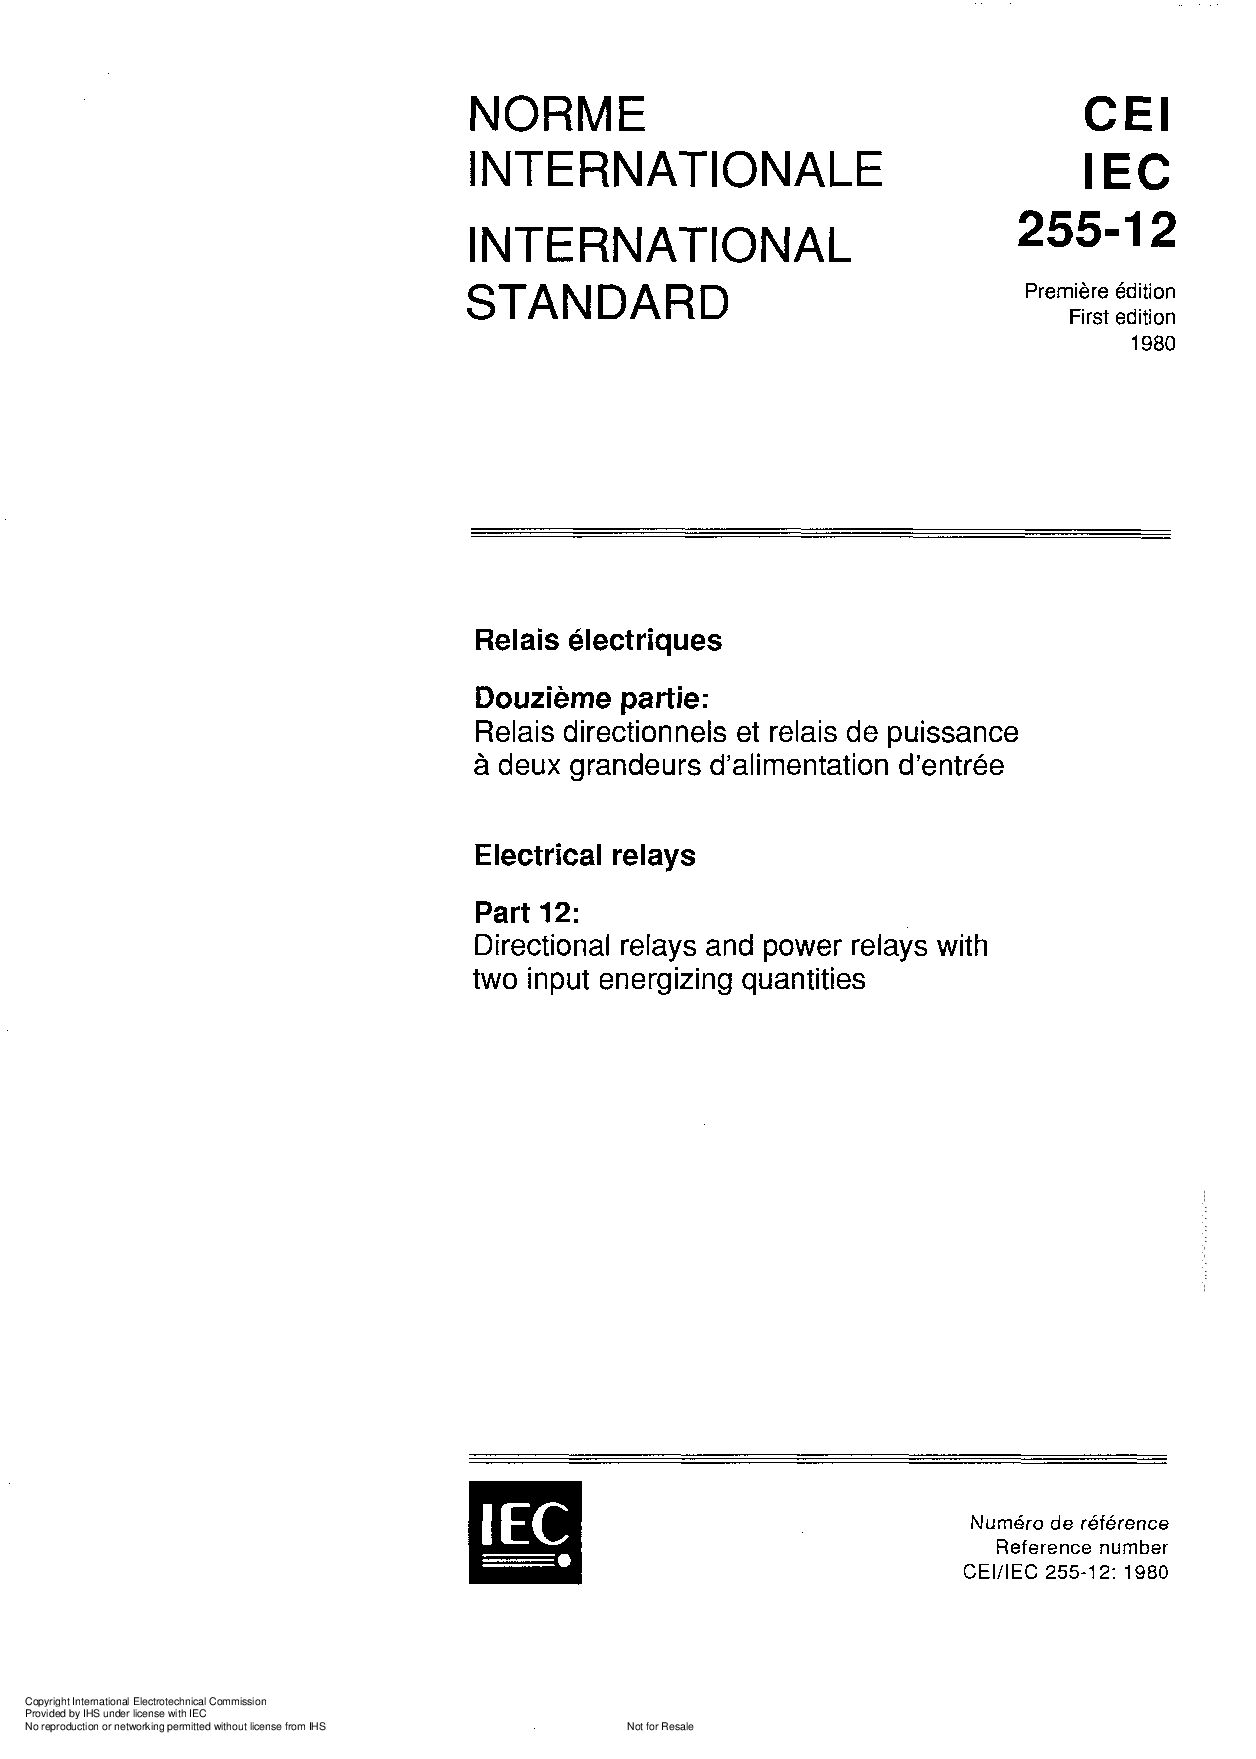 IEC 60255-12:1980